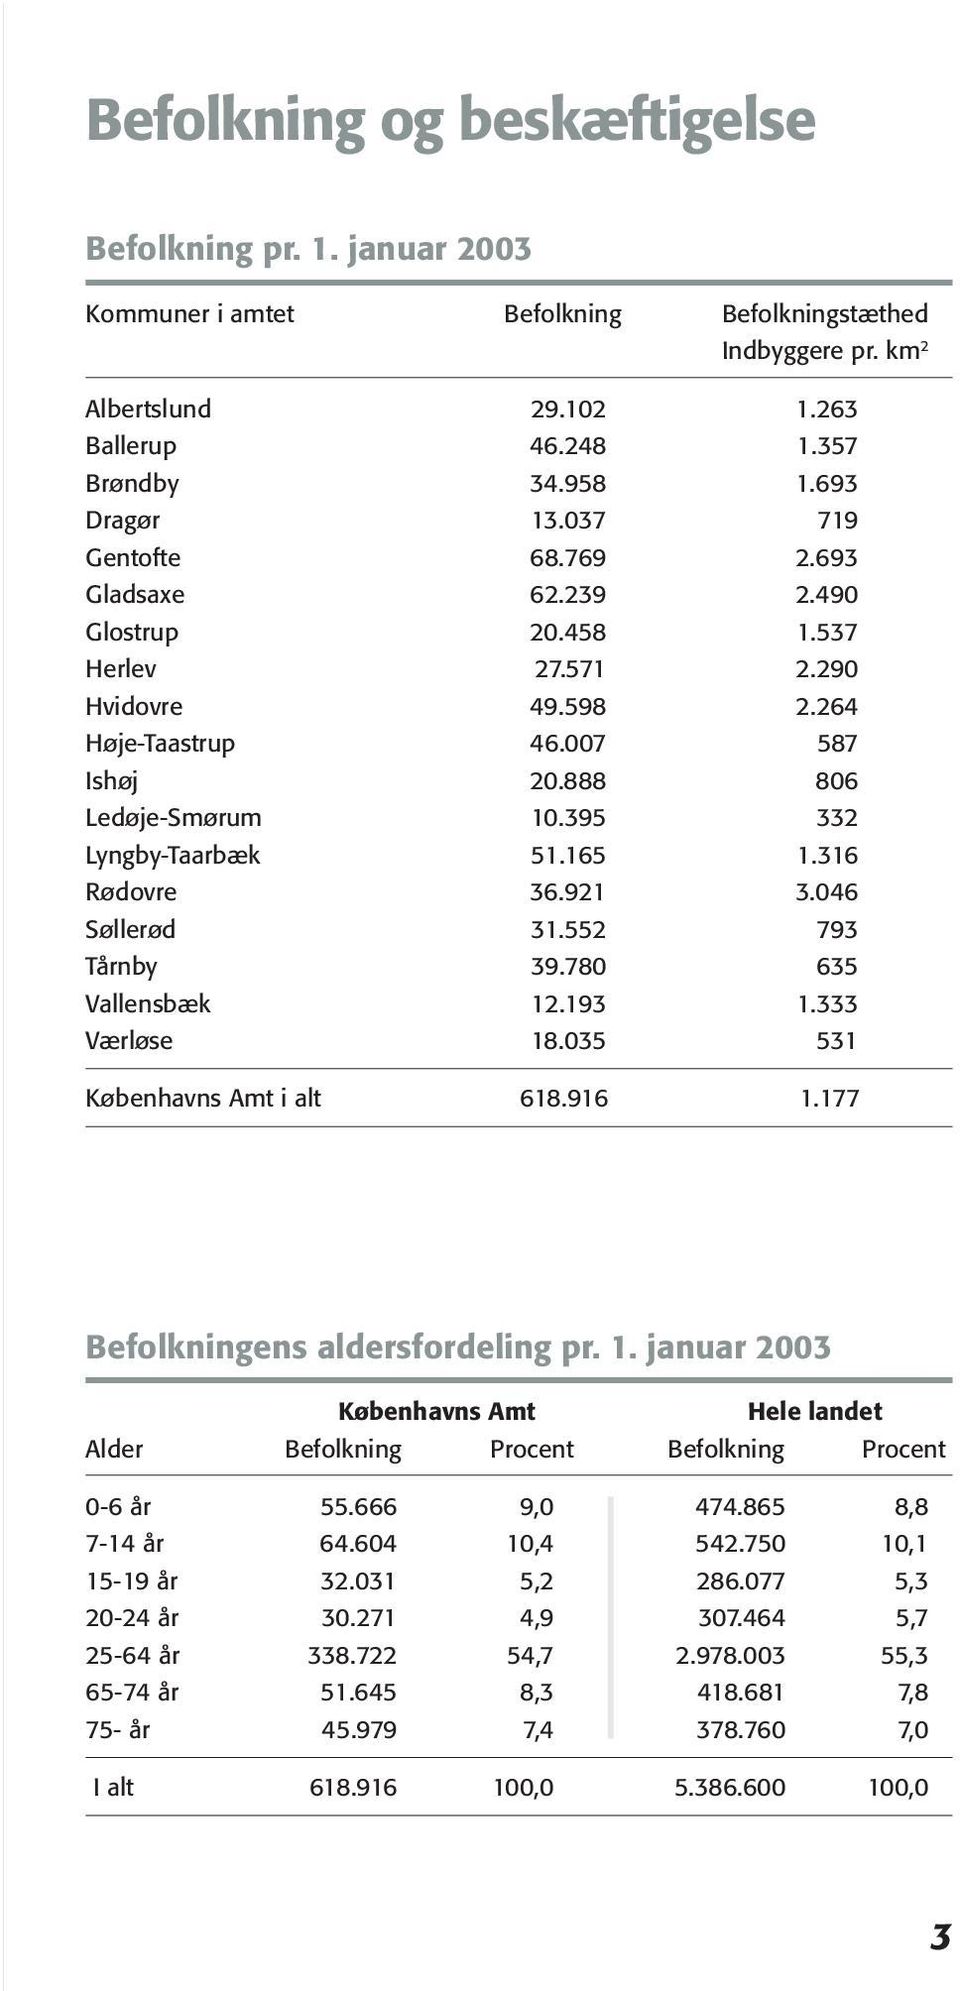 395 332 Lyngby-Taarbæk 51.165 1.316 Rødovre 36.921 3.046 Søllerød 31.552 793 Tårnby 39.780 635 Vallensbæk 12.193 1.333 Værløse 18.035 531 Københavns Amt i alt 618.916 1.